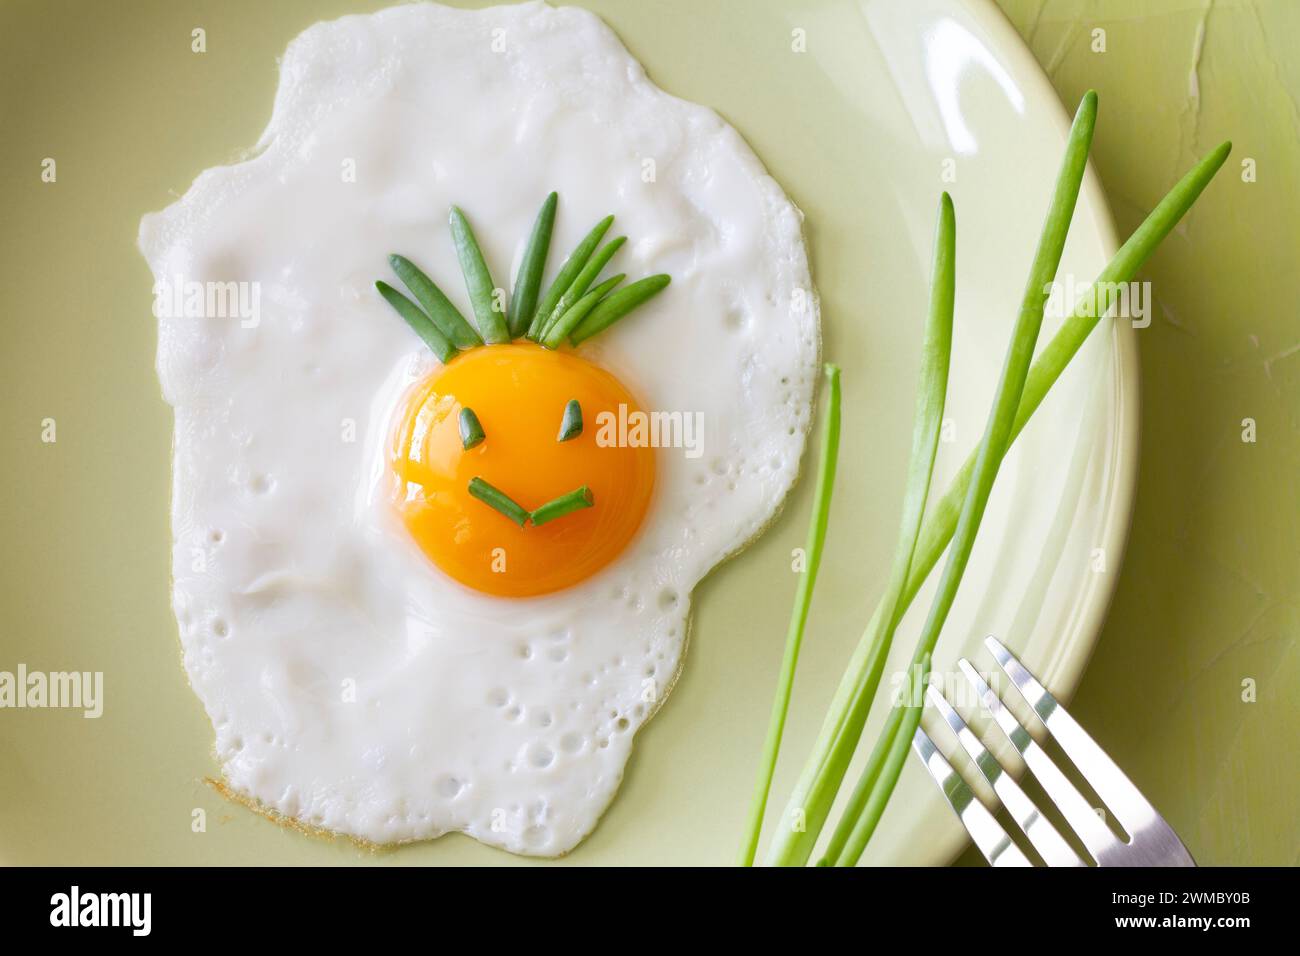 Divertente uovo fritto con sorriso sorridente sul piatto con erba cipollina, concetto creativo per la colazione Foto Stock